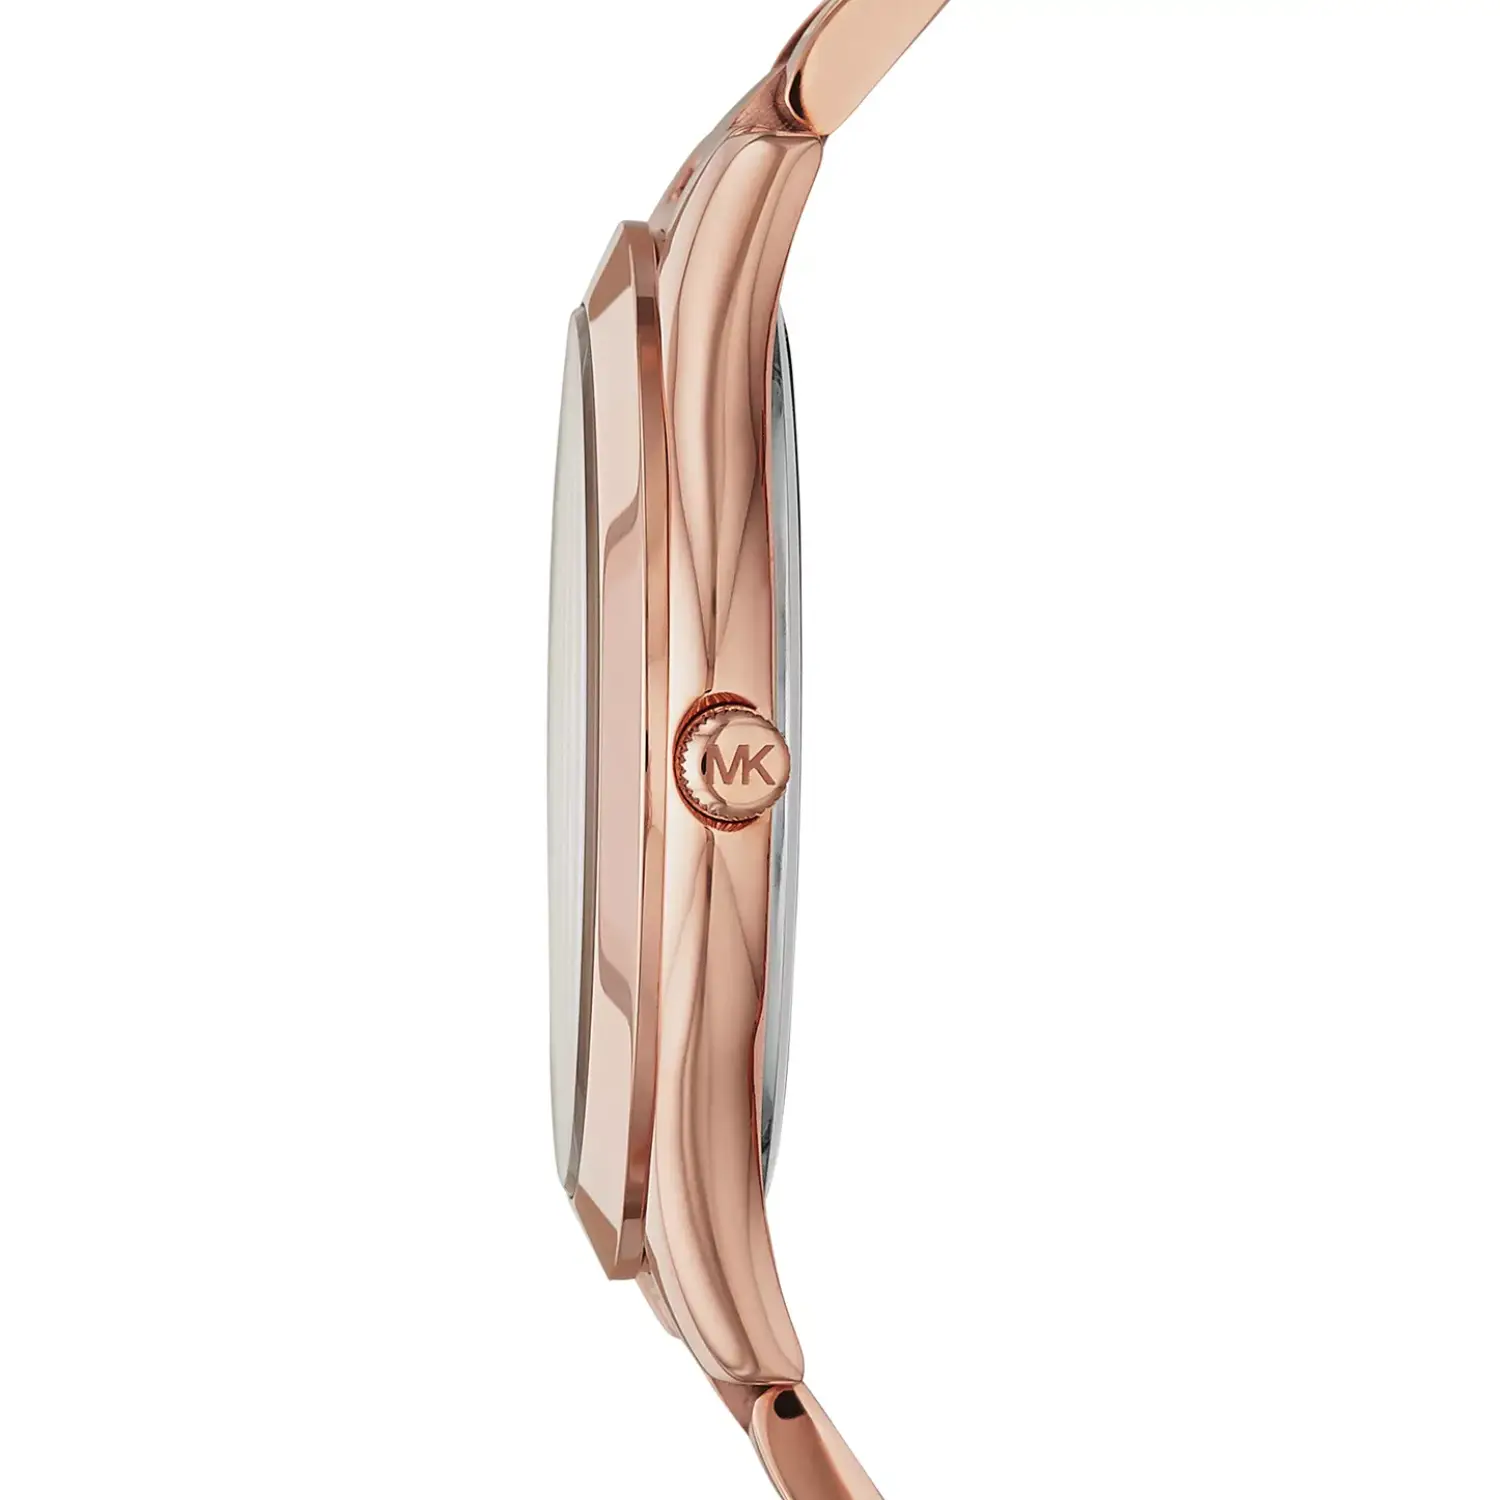 Michael Kors Unisex Slim Runway Rose Gold-Tone Stainless Steel Bracelet Watch 42mm